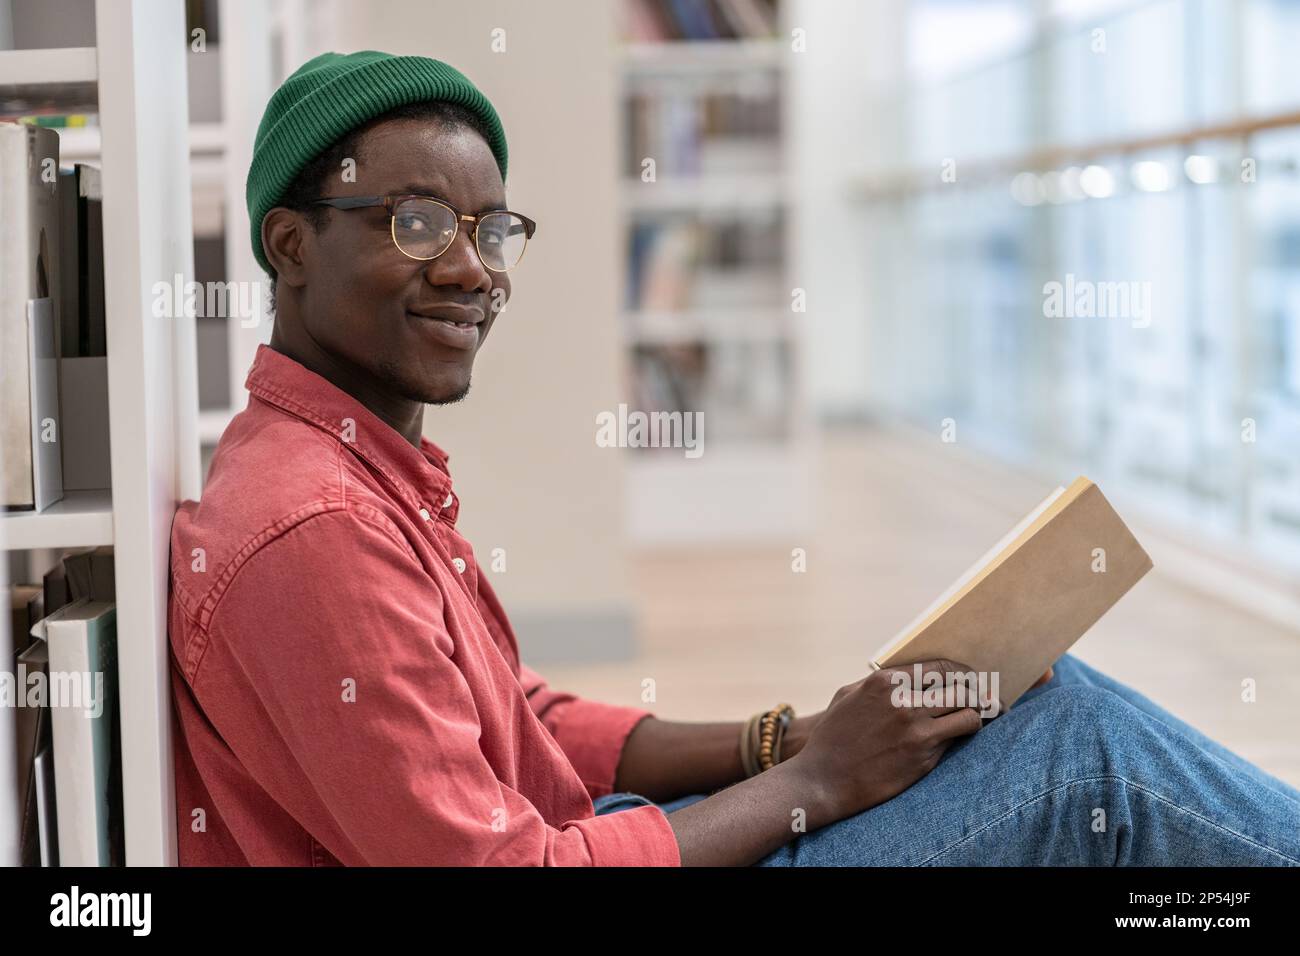 Ein schwarzer Student, der auf dem Boden neben einem Bücherregal sitzt und ein Buch in der Hand hält, schaut in die Kamera Stockfoto